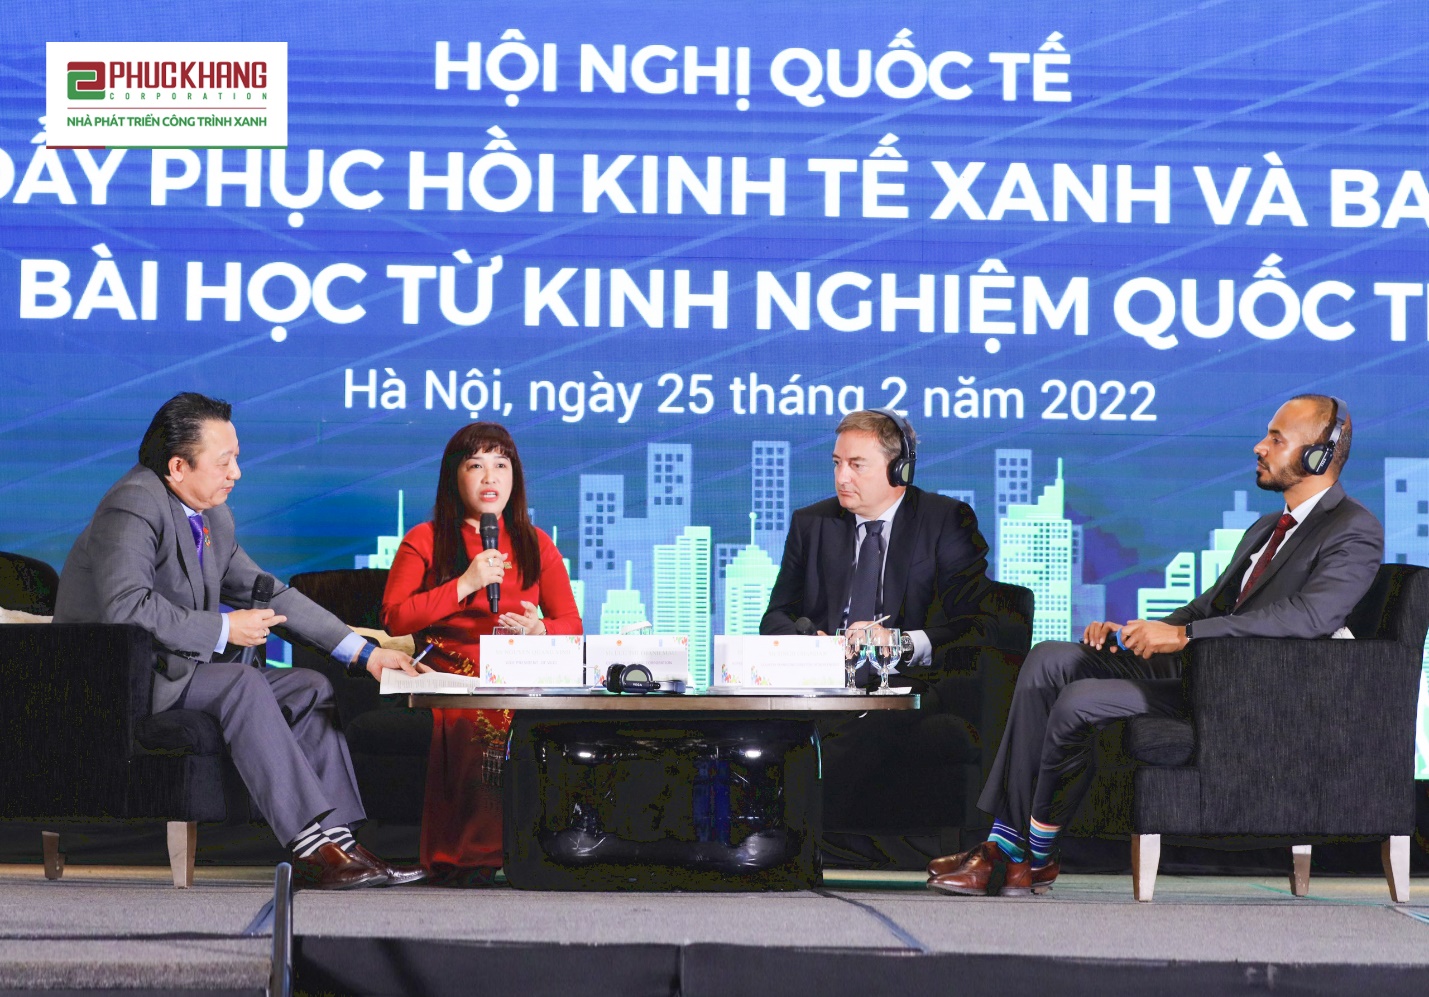 Bà Lưu Thị Thanh Mẫu - CEO Phuc Khang Corporation tham gia tham luận bàn tròn về phục hồi kinh tế xanh hậu COVID-19